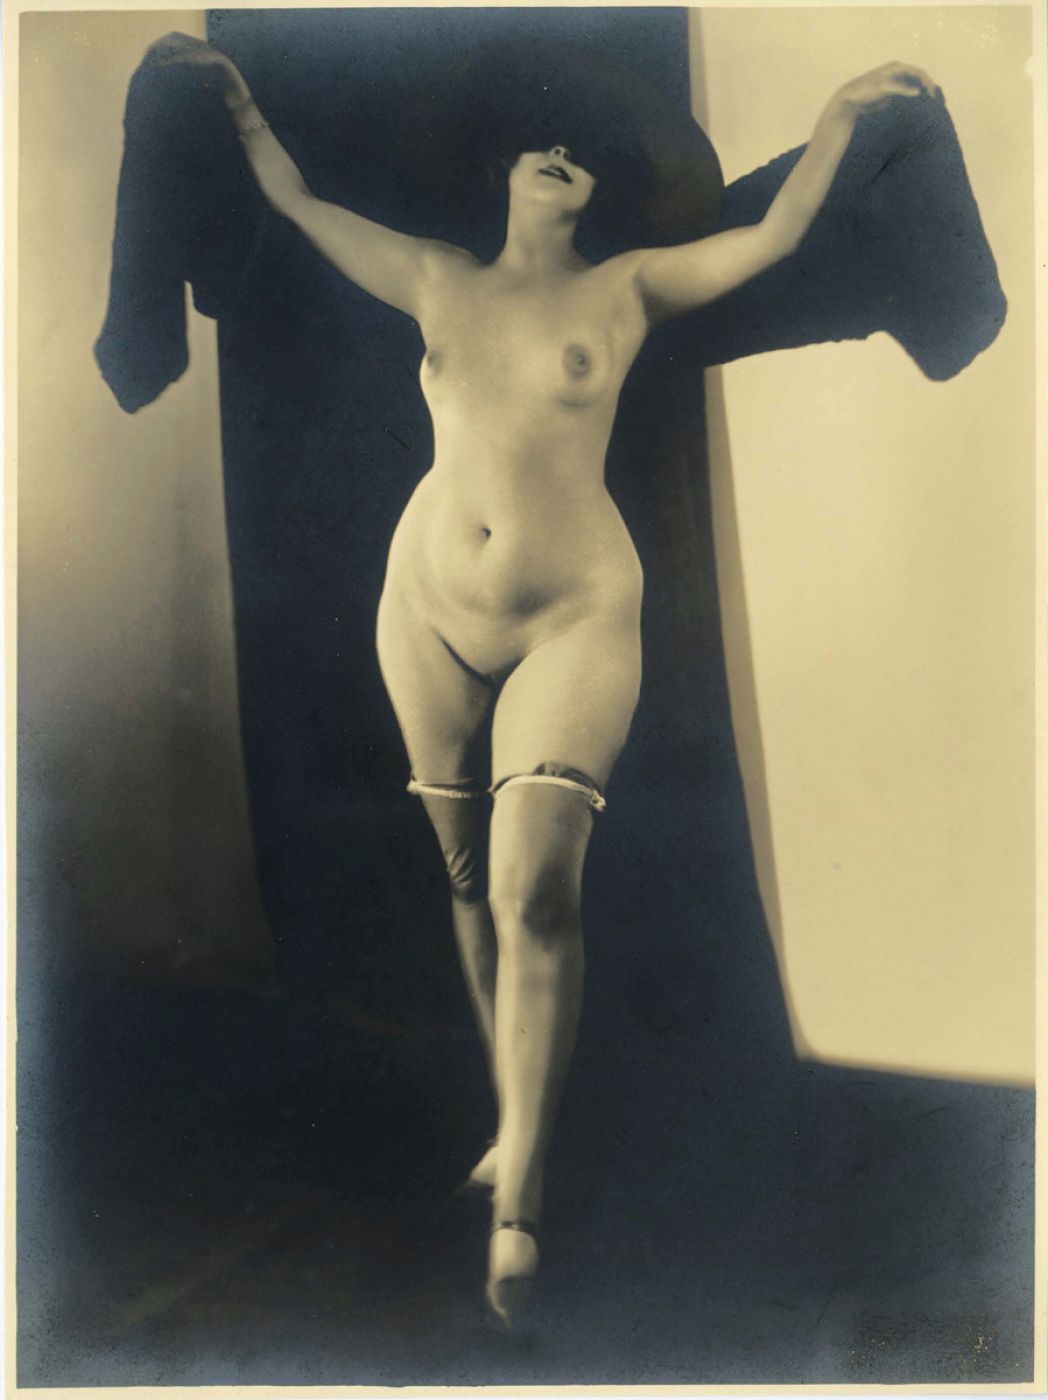 Albert Wyndham, “Untitled”, 1930 ca.